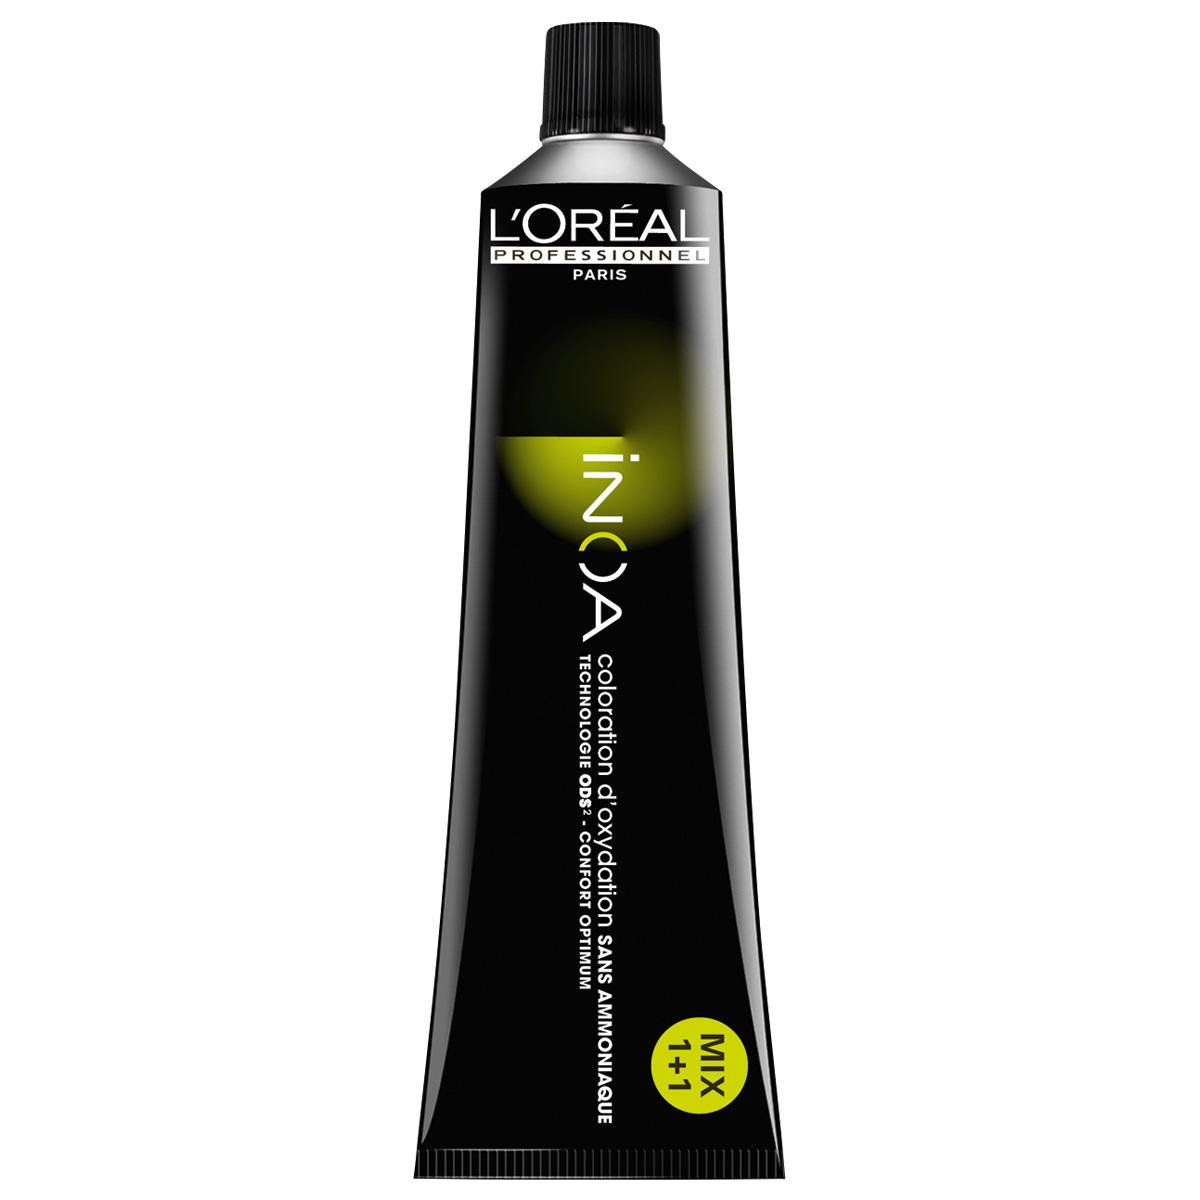 L'Oréal Professionnel Paris Coloration 6.0 Donker Blond Intensief, Tube 60 ml - 1